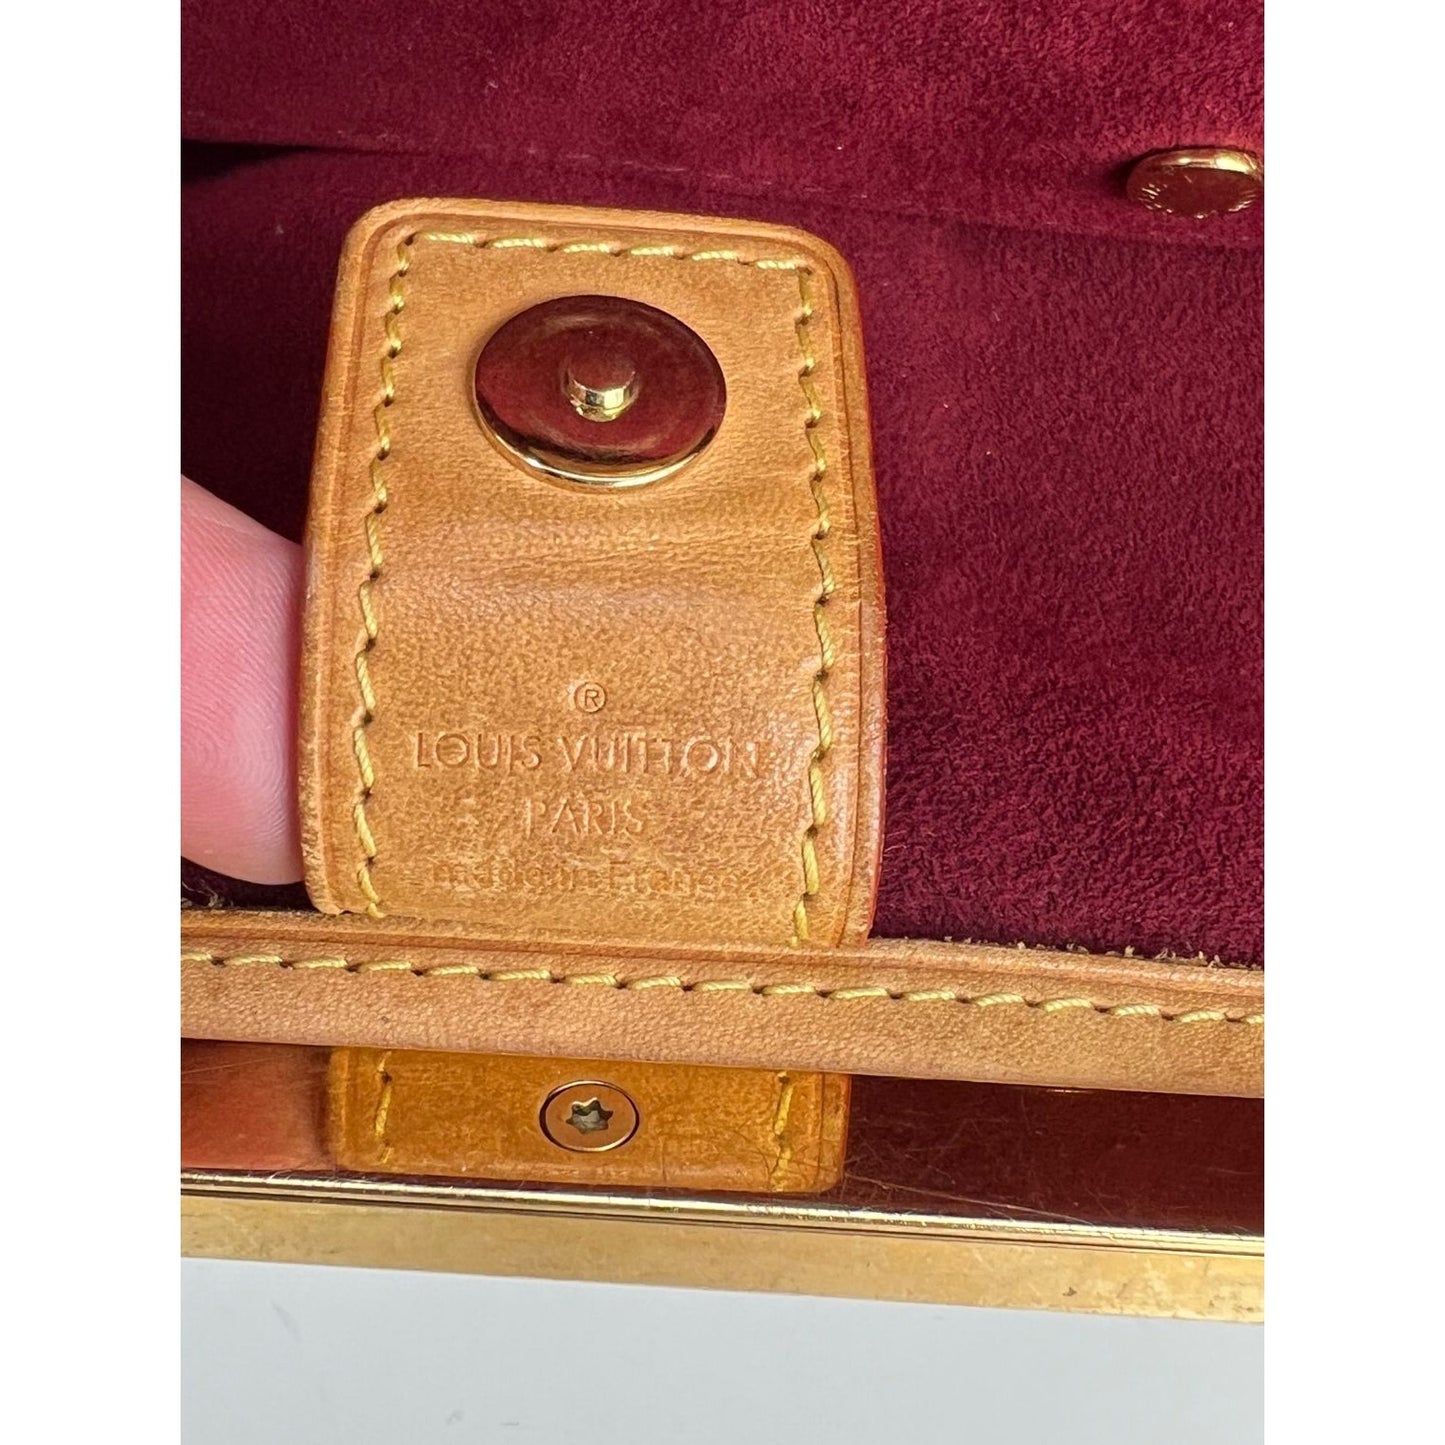 Authenticated used Louis Vuitton Louis Vuitton Judy PM Handbag M40257 Monogram Multicolor Leather Bron Semi-Shoulder Bag One Shoulder, Adult Unisex